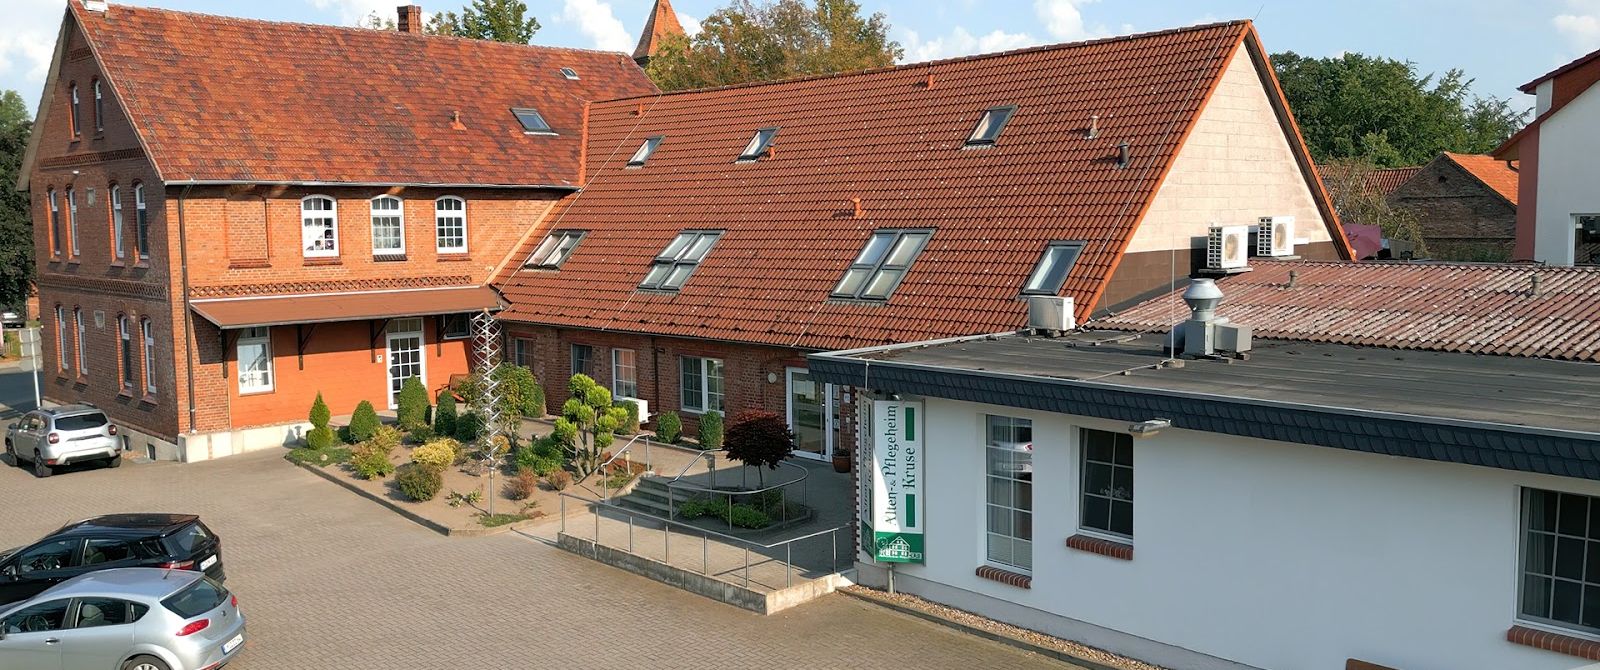 Pflegeheim Petershagen, Minden-Lübbecke (Landkr.)